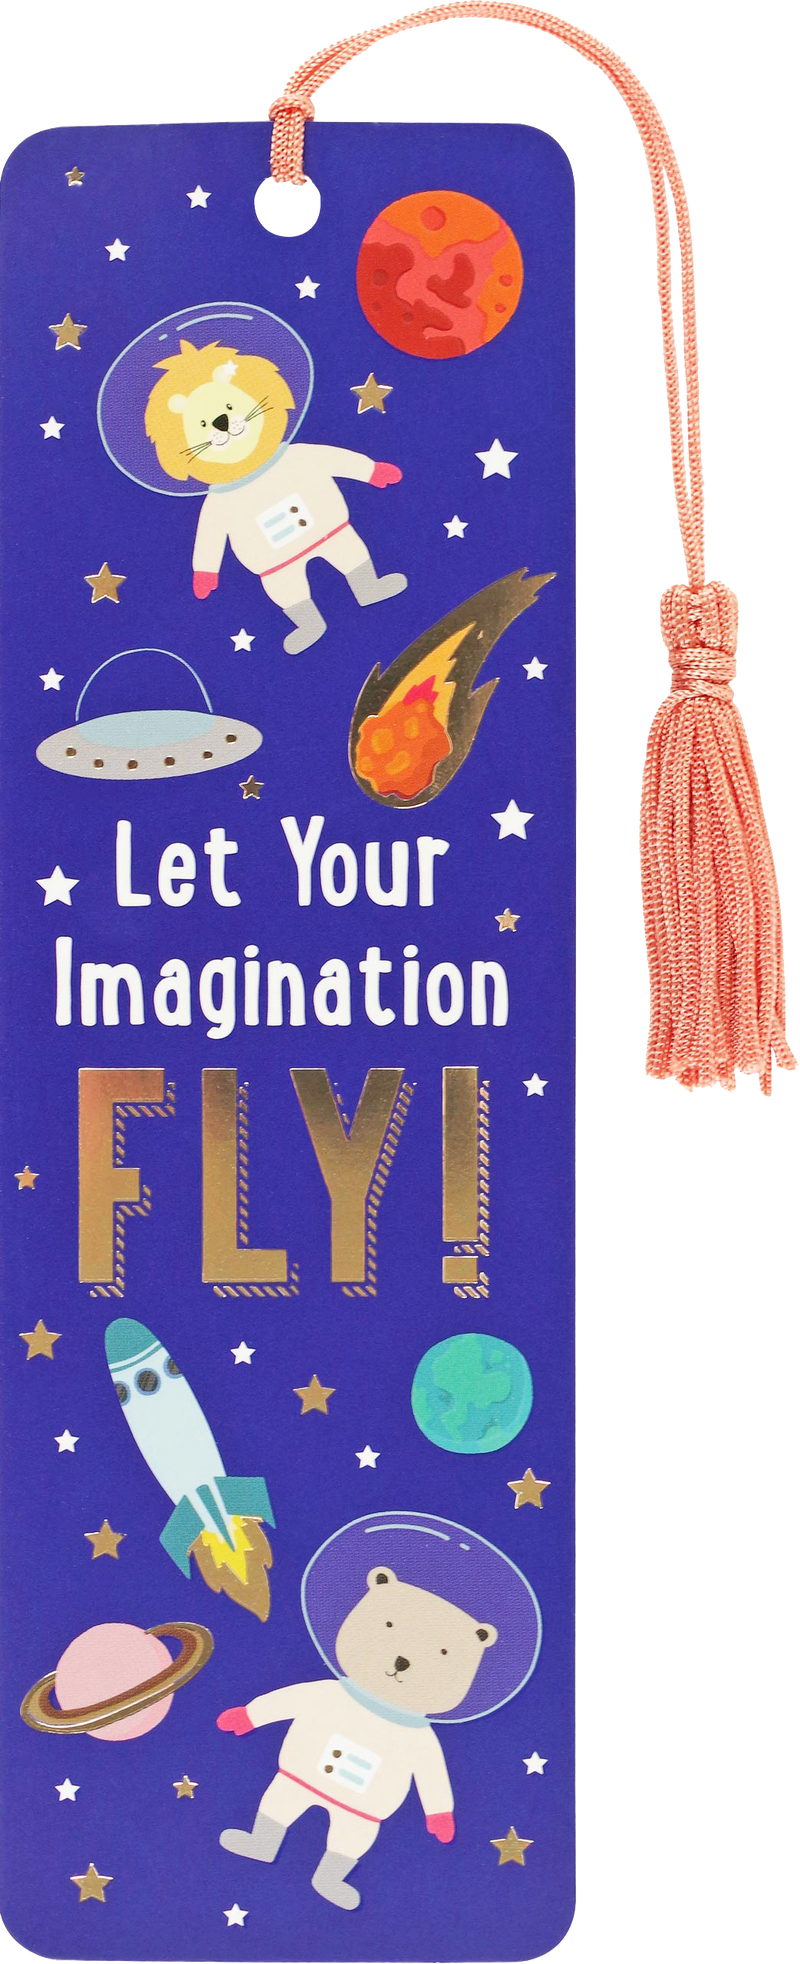 Let Your Imagination Fly! Children&